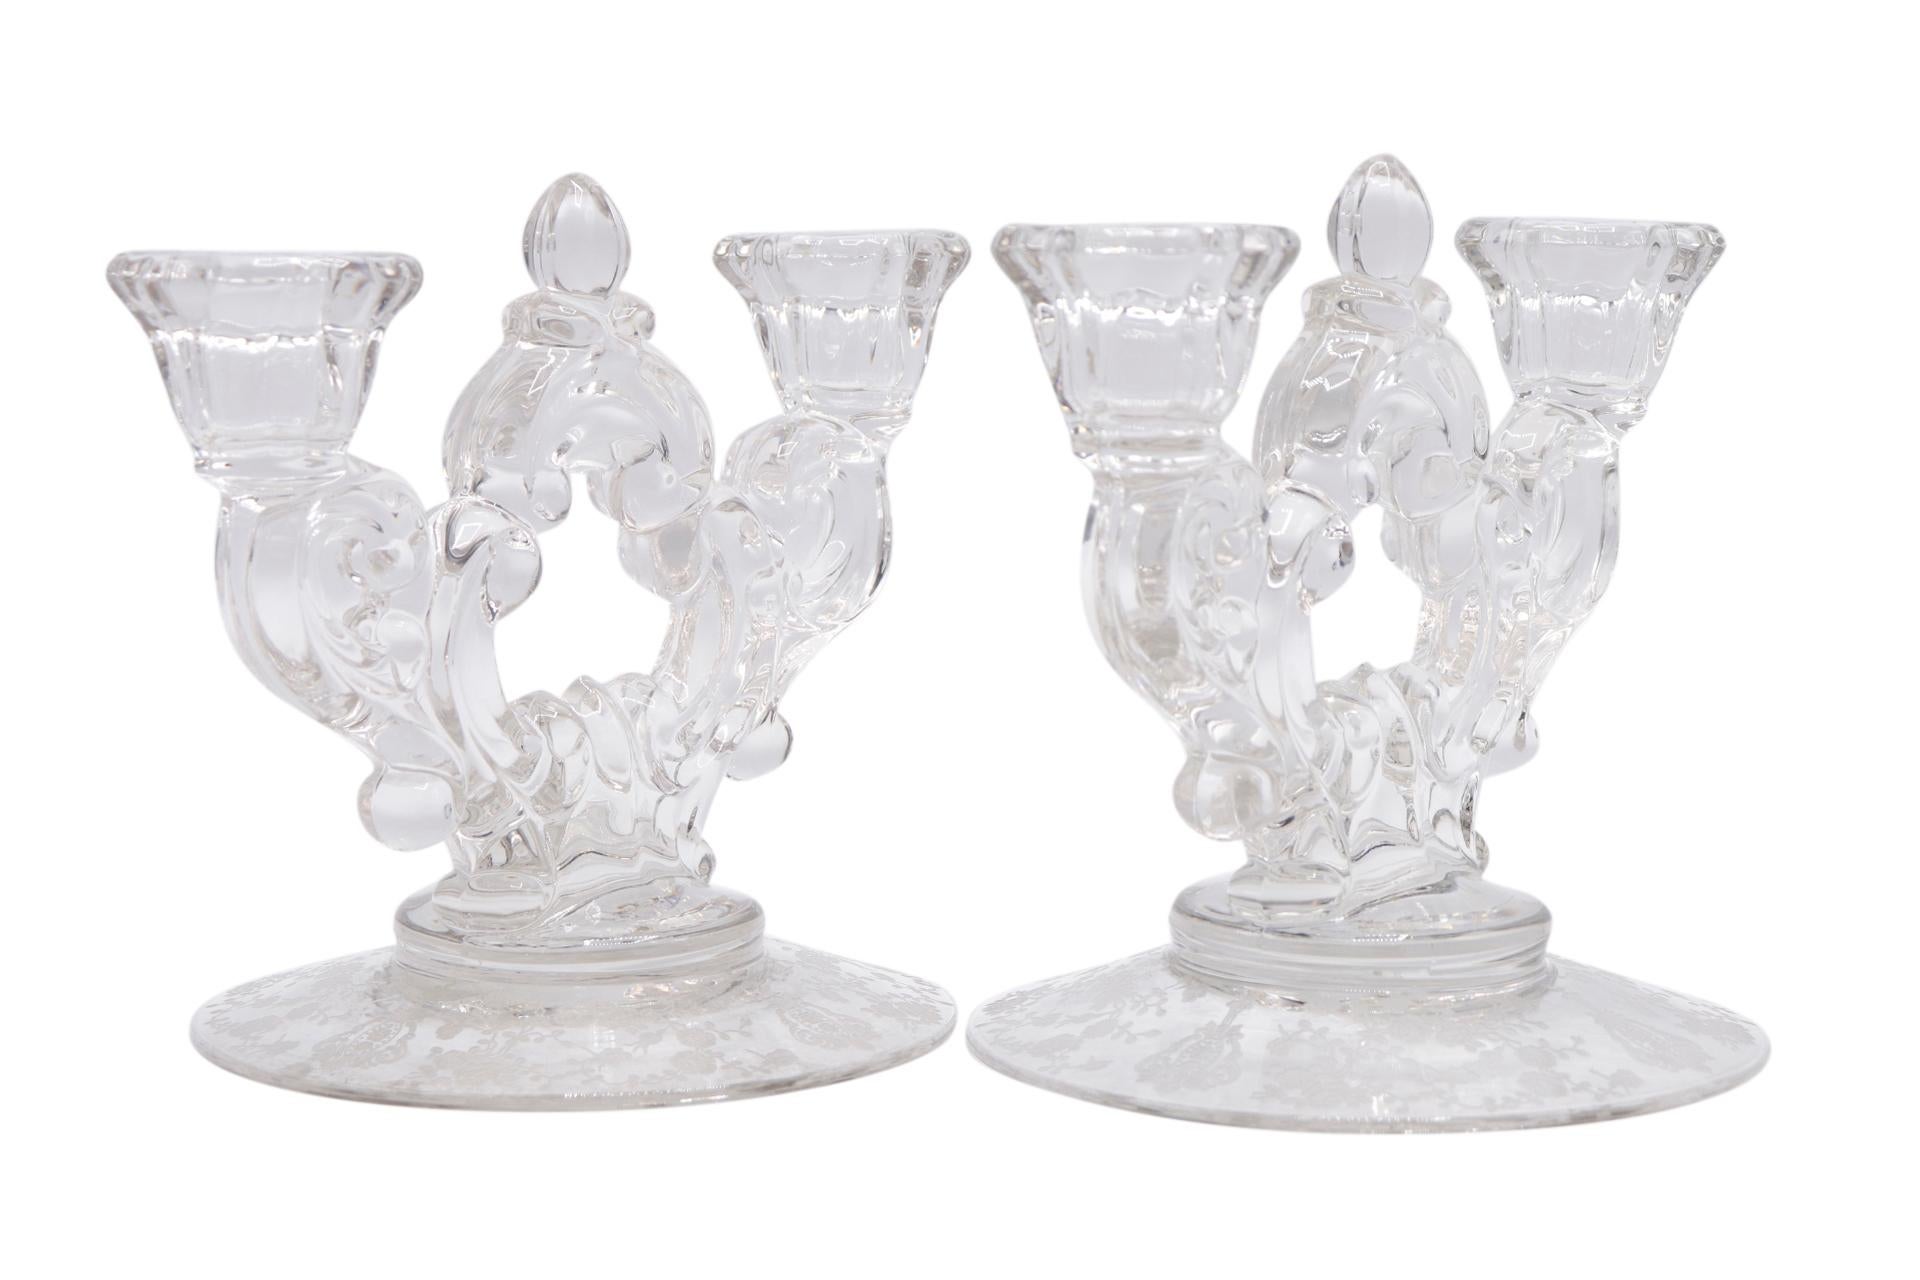 Une paire de candélabres en verre gravé des années 1940 fabriqués par Cambridge Glass. Deux chapiteaux anglés sont soutenus par des tiges à volutes qui se rejoignent au centre par un épi de faîtage en forme de gland. La base est gravée du motif